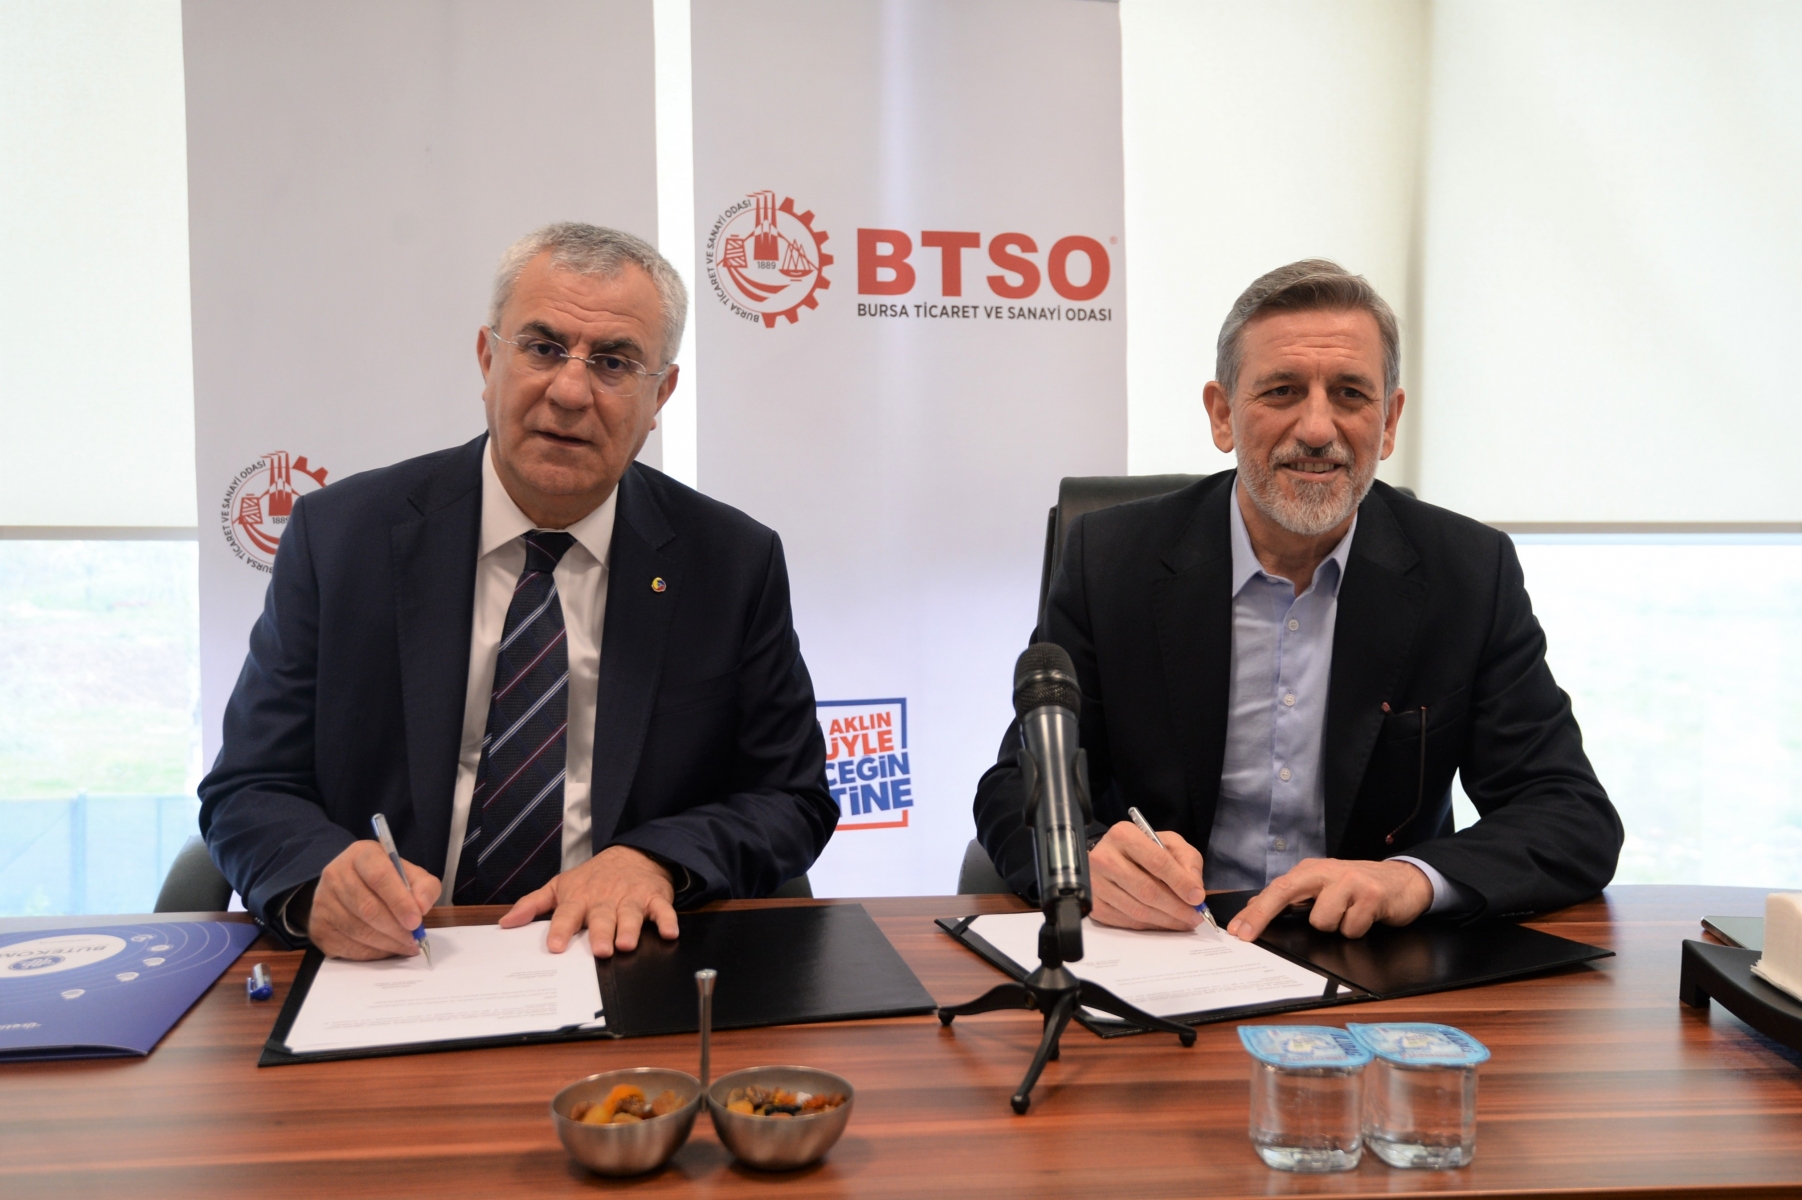 Bursa Ticaret ve Sanayi Odası (BTSO) ile Adana Sanayi Odası (ADASO) arasında stratejik işbirliği protokolü imzalandı.